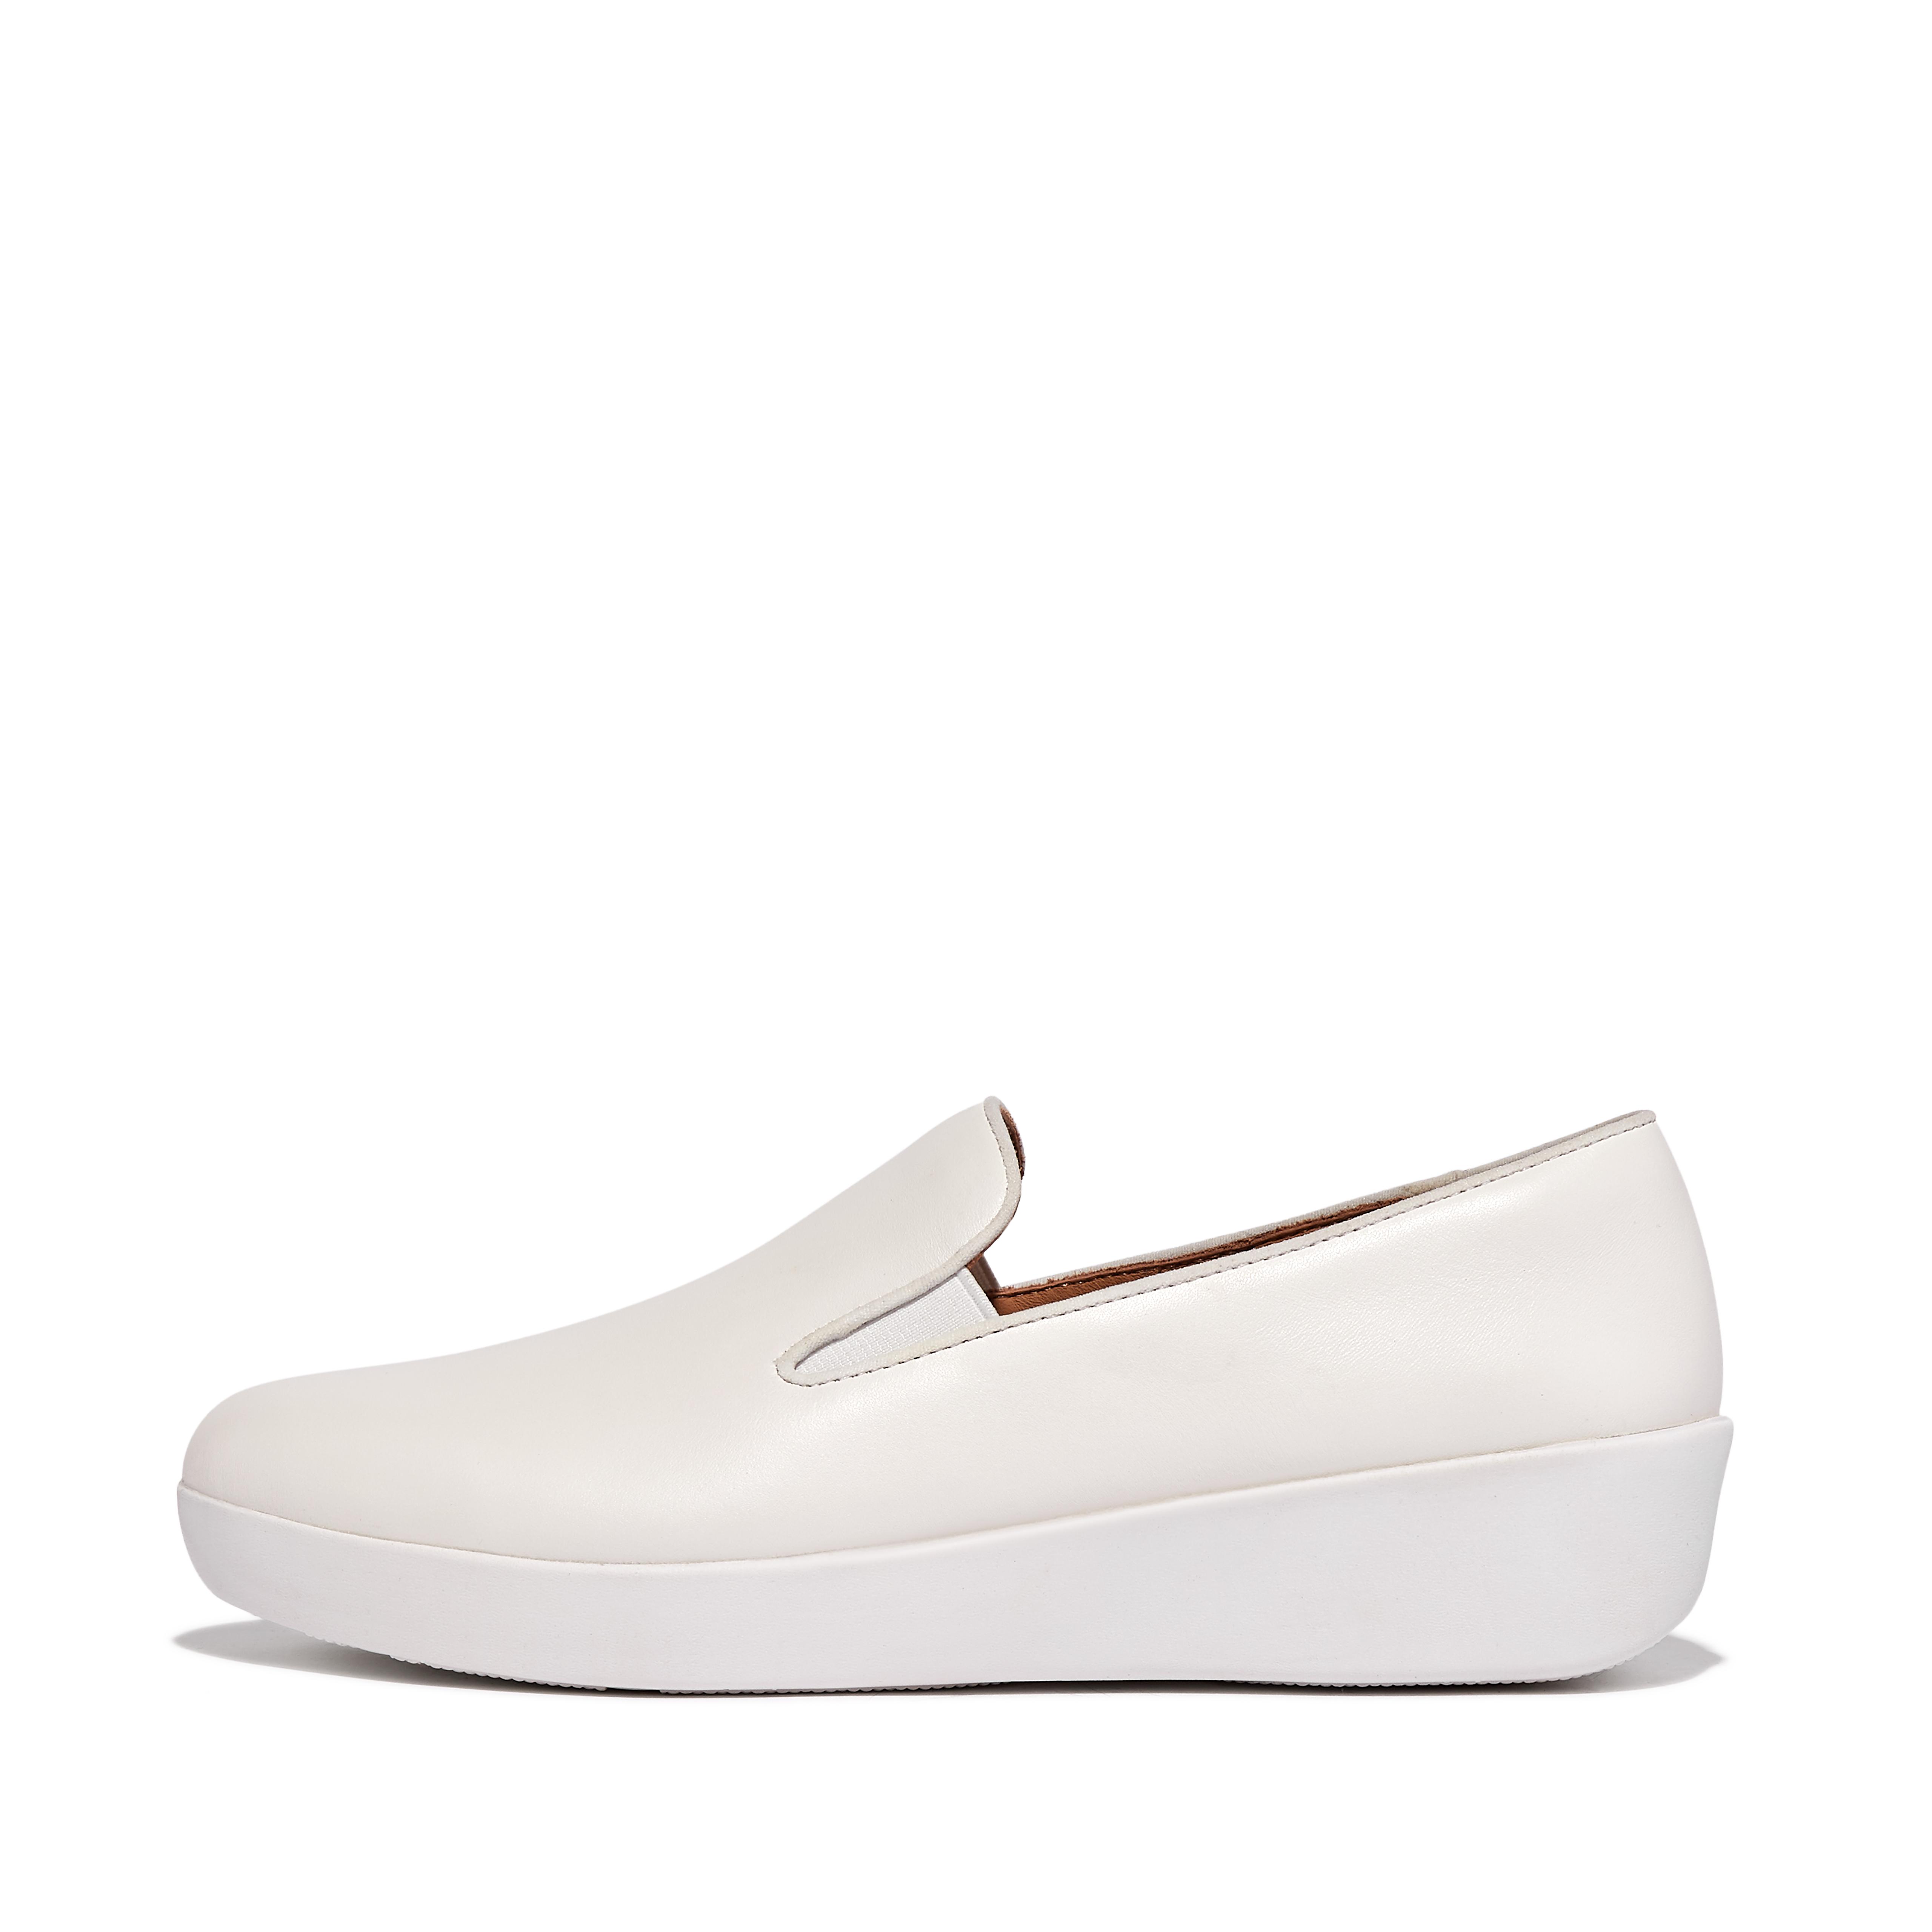 핏플랍 슬립온 스니커즈 Fitflop Leather Loafers,Urban White